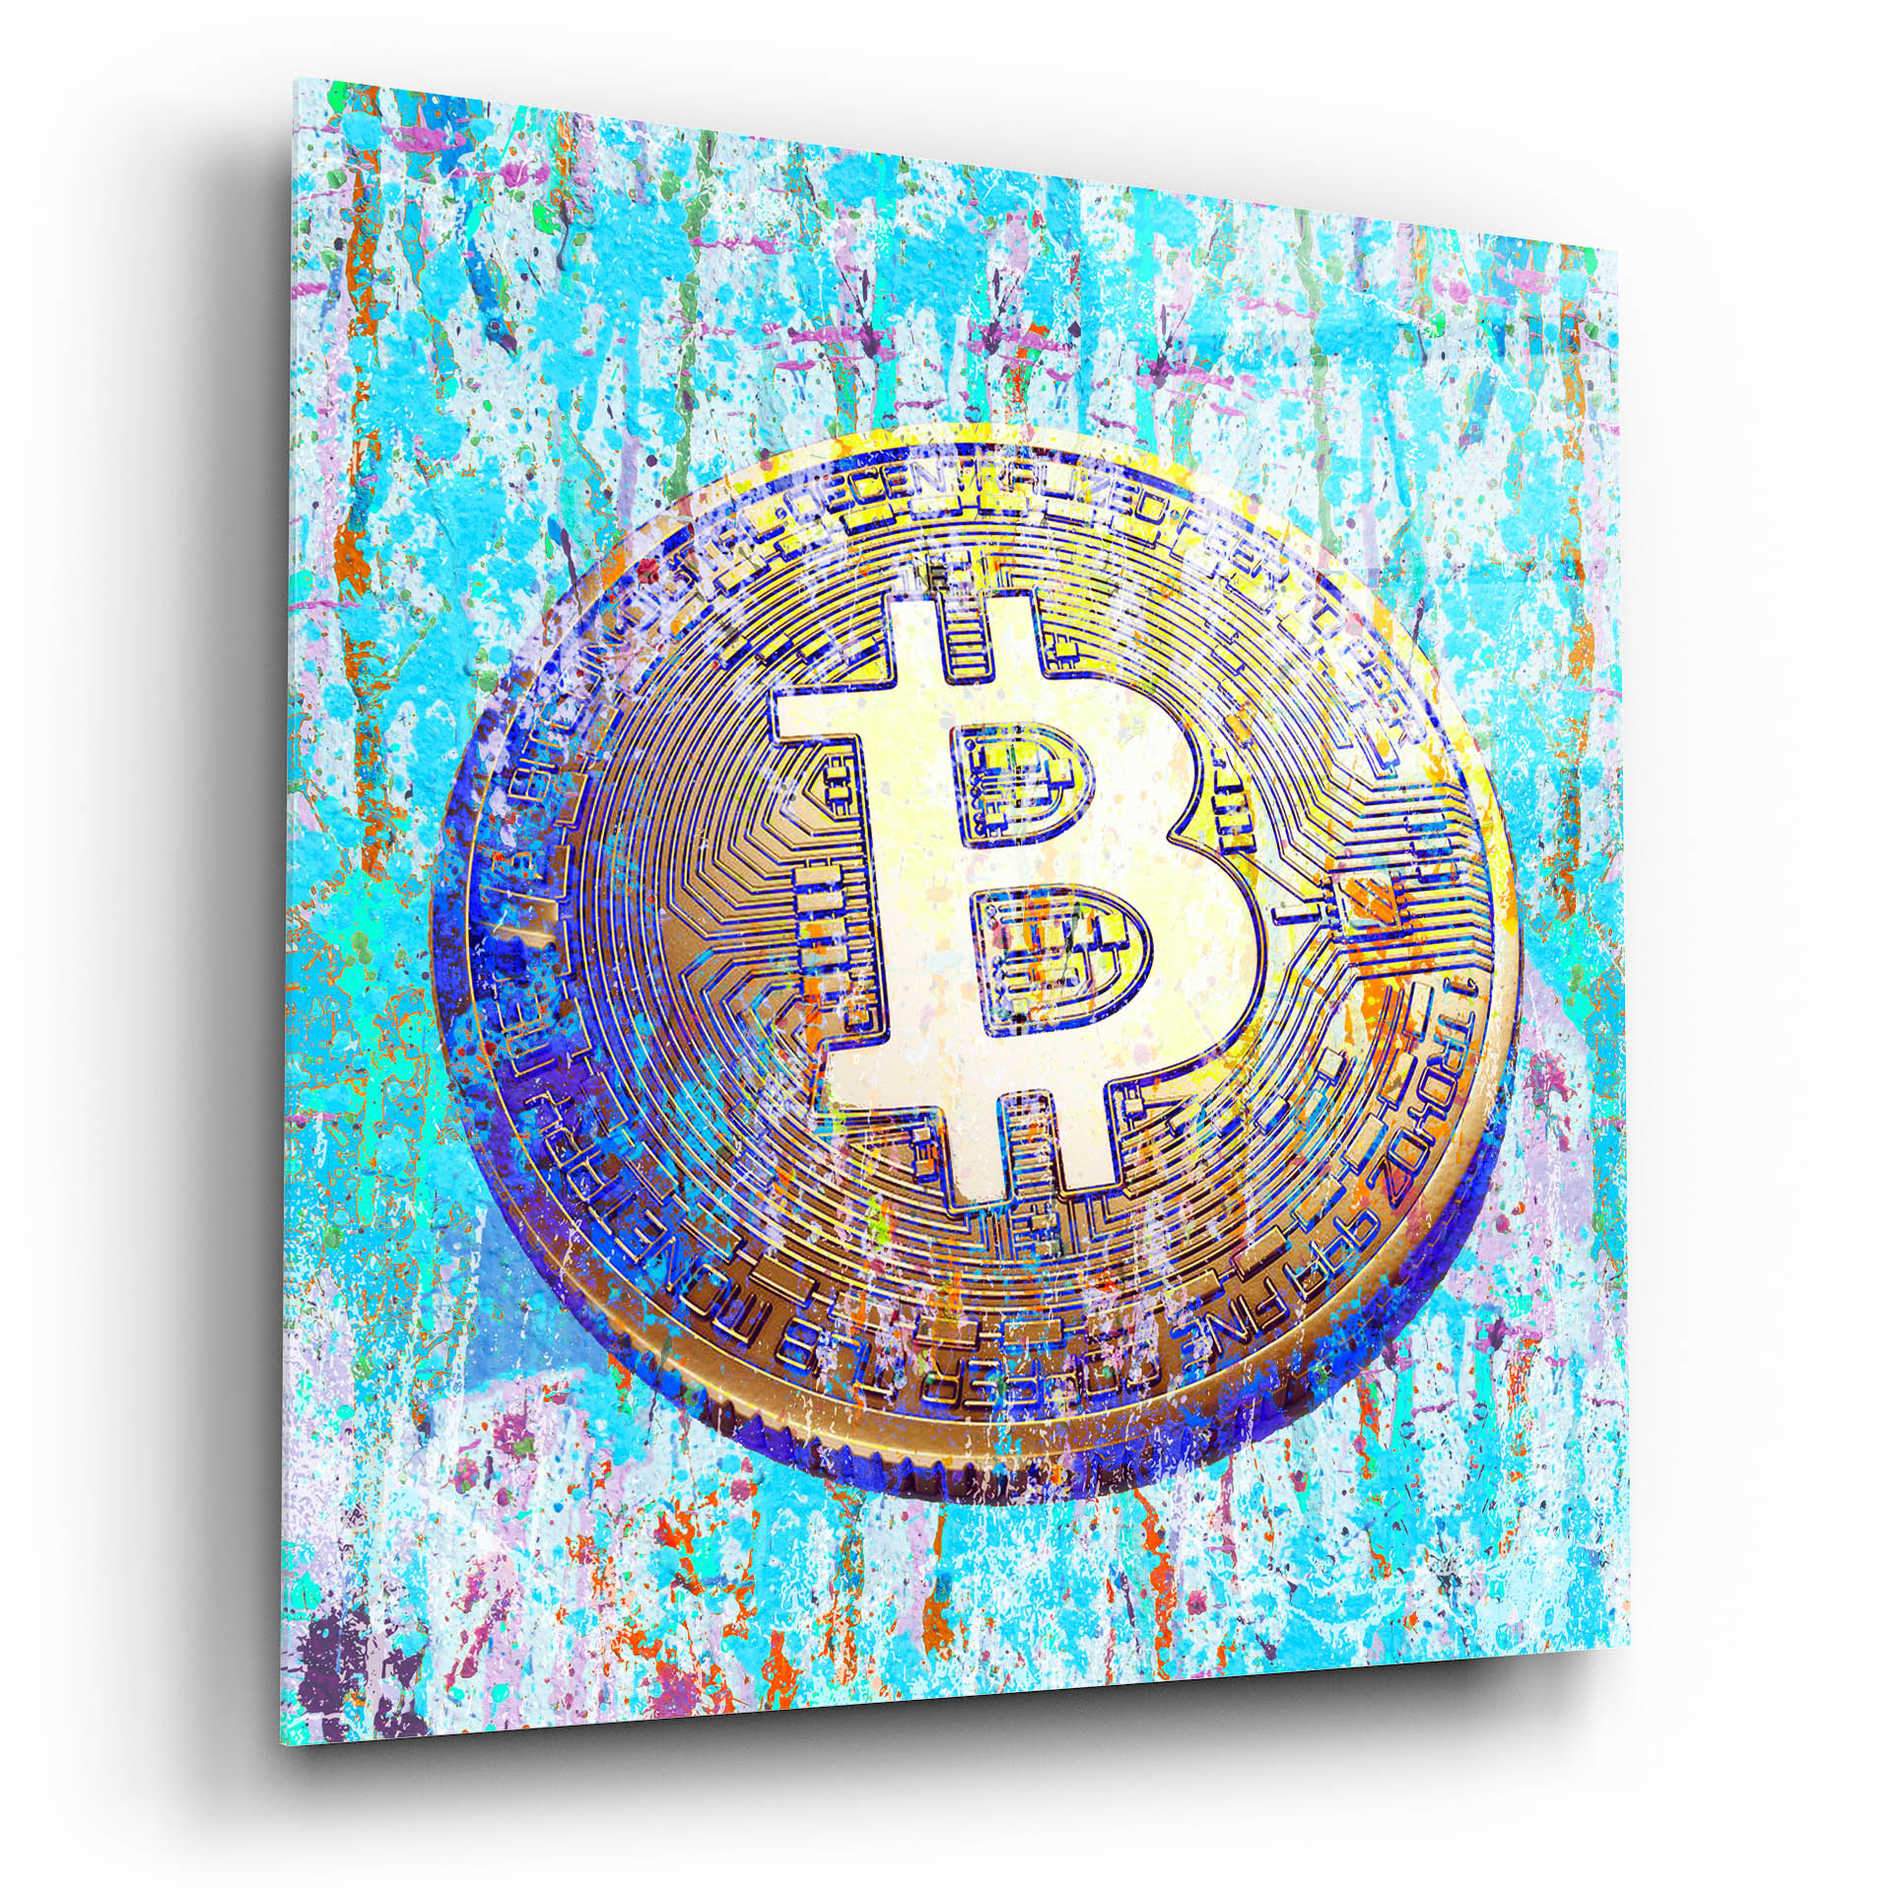 'The Inextinguishable Bitcoin,' Acrylic Wall Art - Crypto World